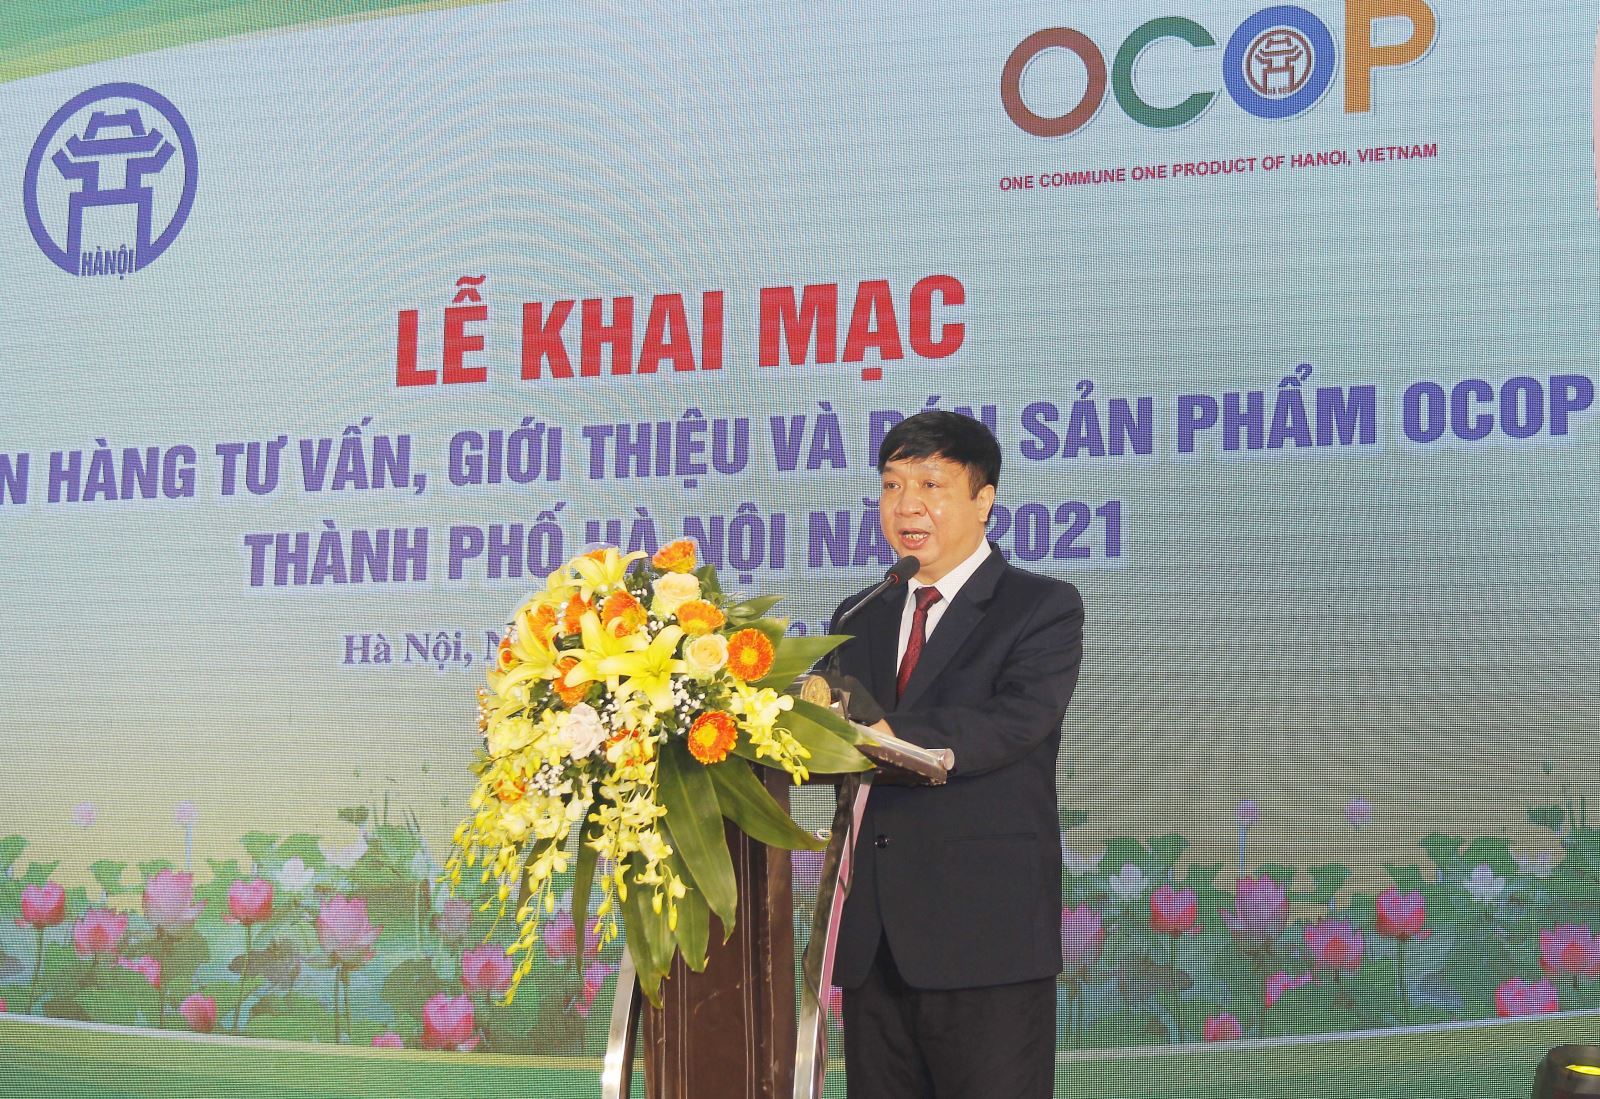 Phó Chánh Văn phòng Thường trực Văn phòng Điều phối nông thôn mới Hà Nội Nguyễn Văn Chí phát biểu khai mạc